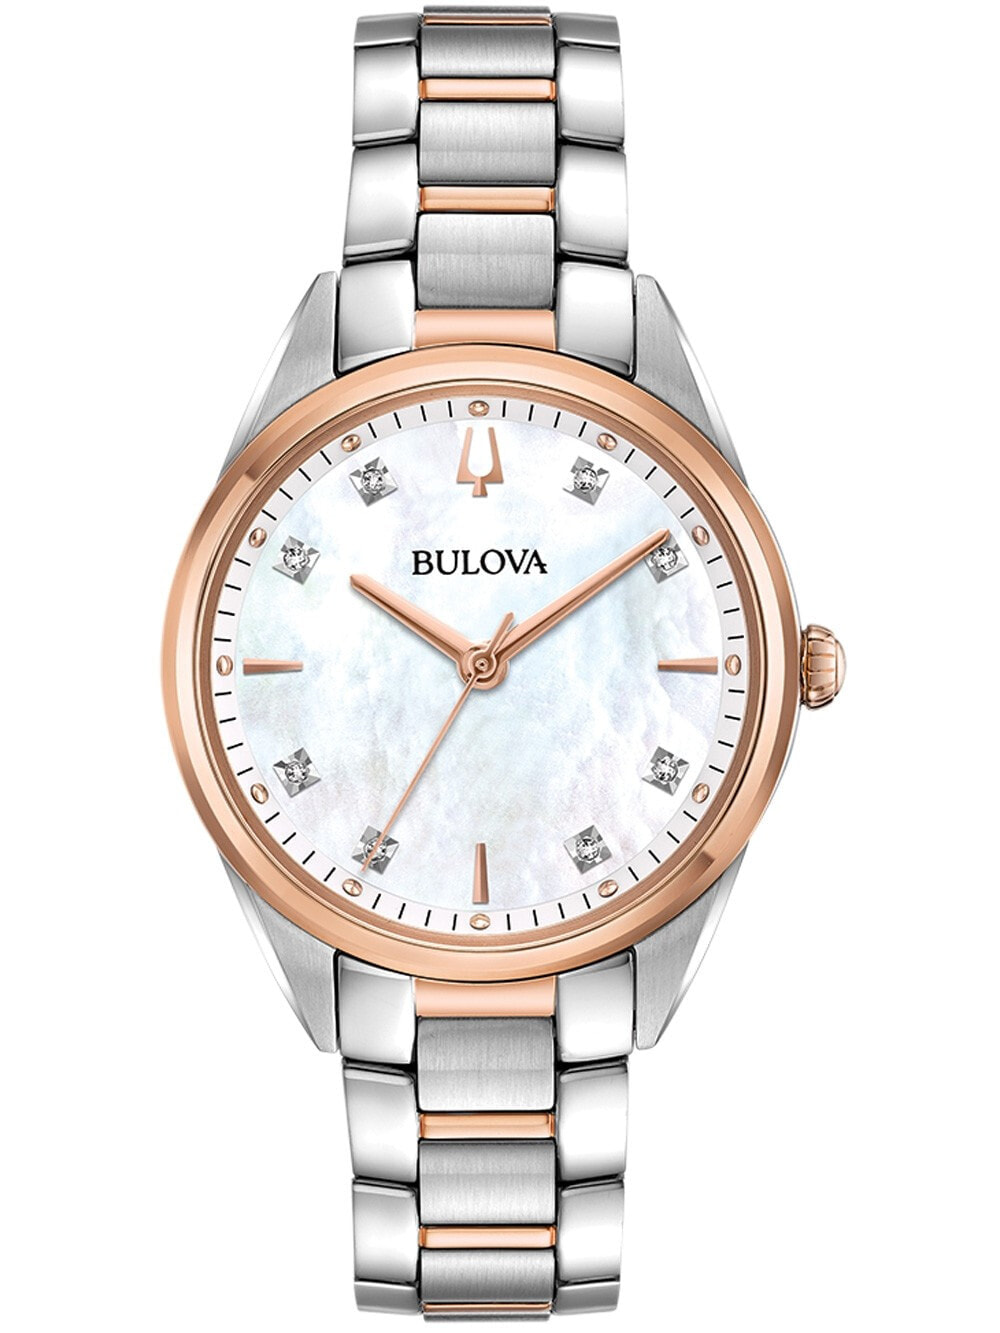 Женские наручные кварцевые часы Bulova ремешок из нержавеющей стали. Водонепроницаемость-3 АТМ. Защищенное от царапин антибликовое сапфировое стекло.  Циферблат украшен 8 бриллиантами.